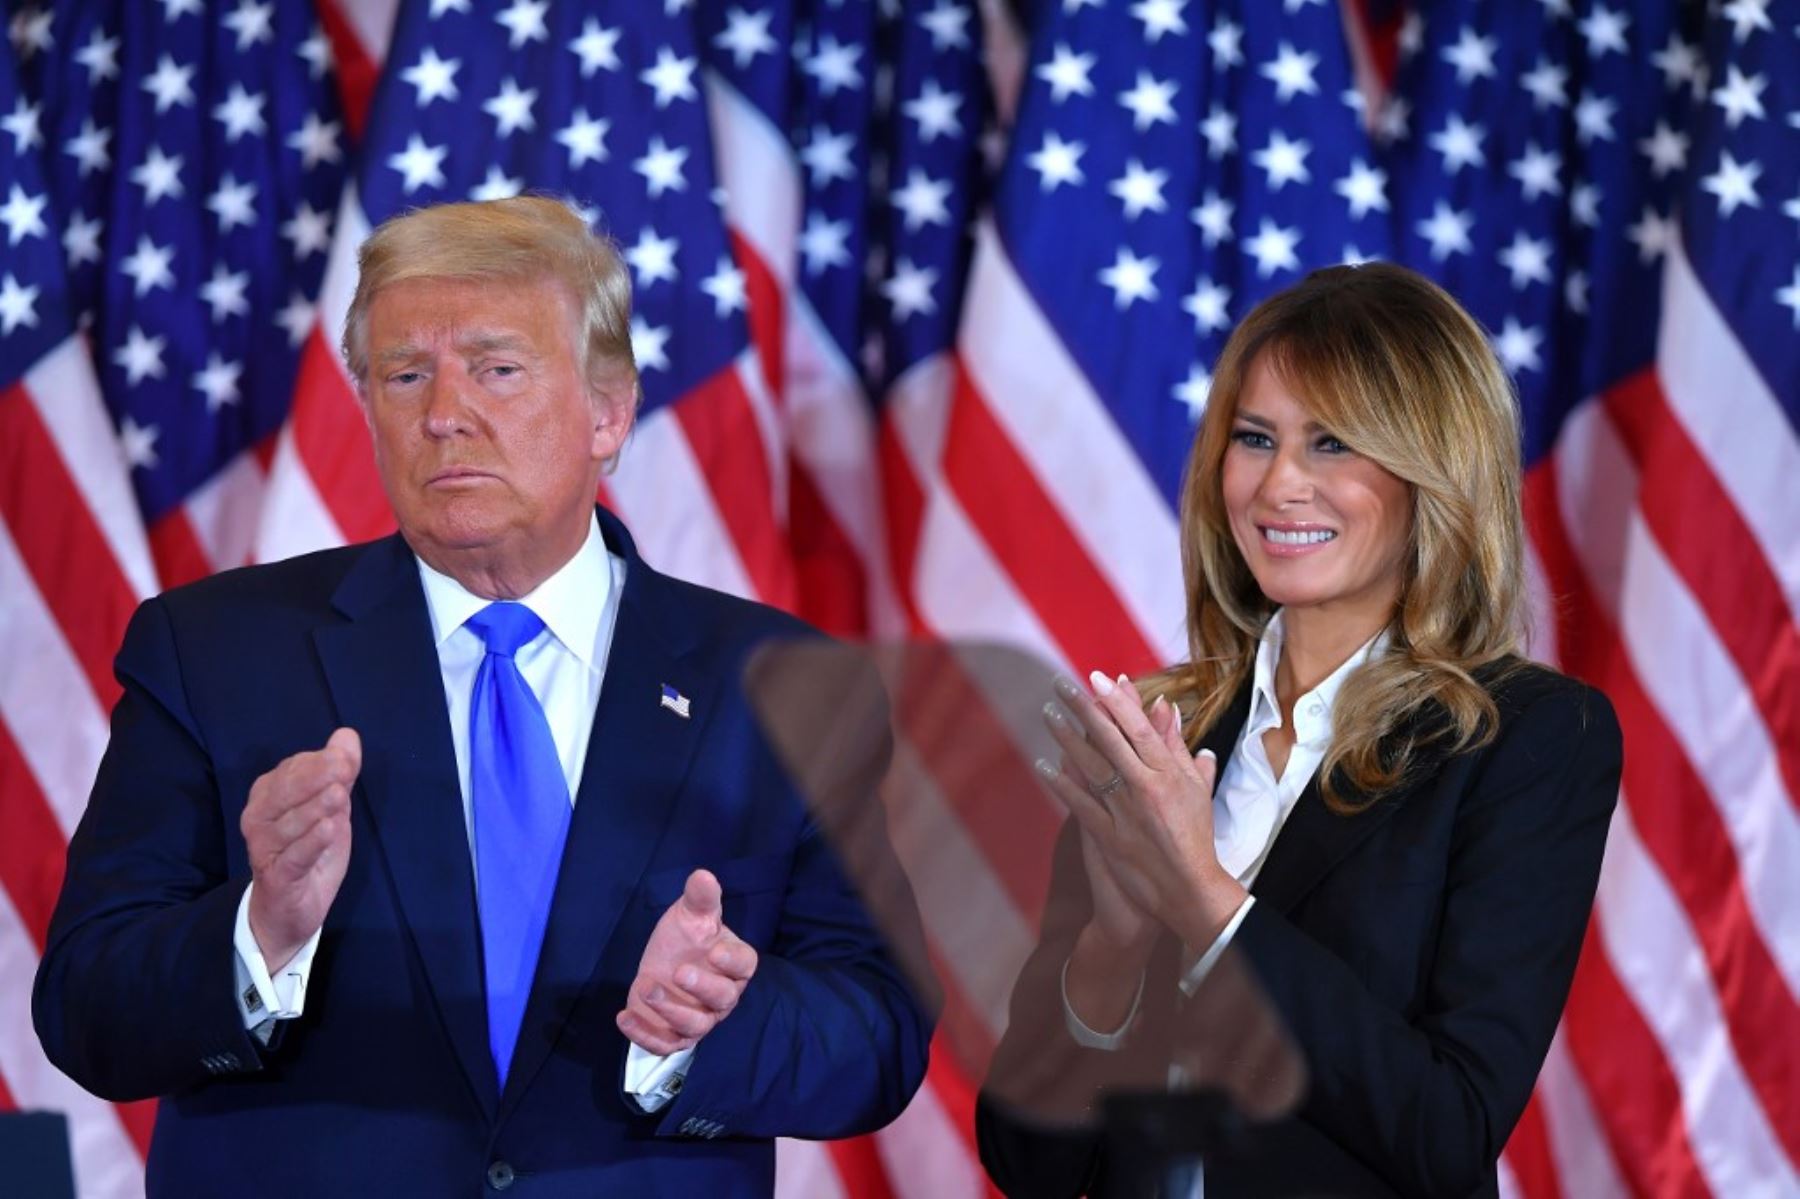 El presidente de los Estados Unidos, Donald Trump, aplaude junto a la primera dama de los Estados Unidos, Melania Trump, durante la noche de las elecciones en el East Room de la Casa Blanca en Washington.Foto: AFP